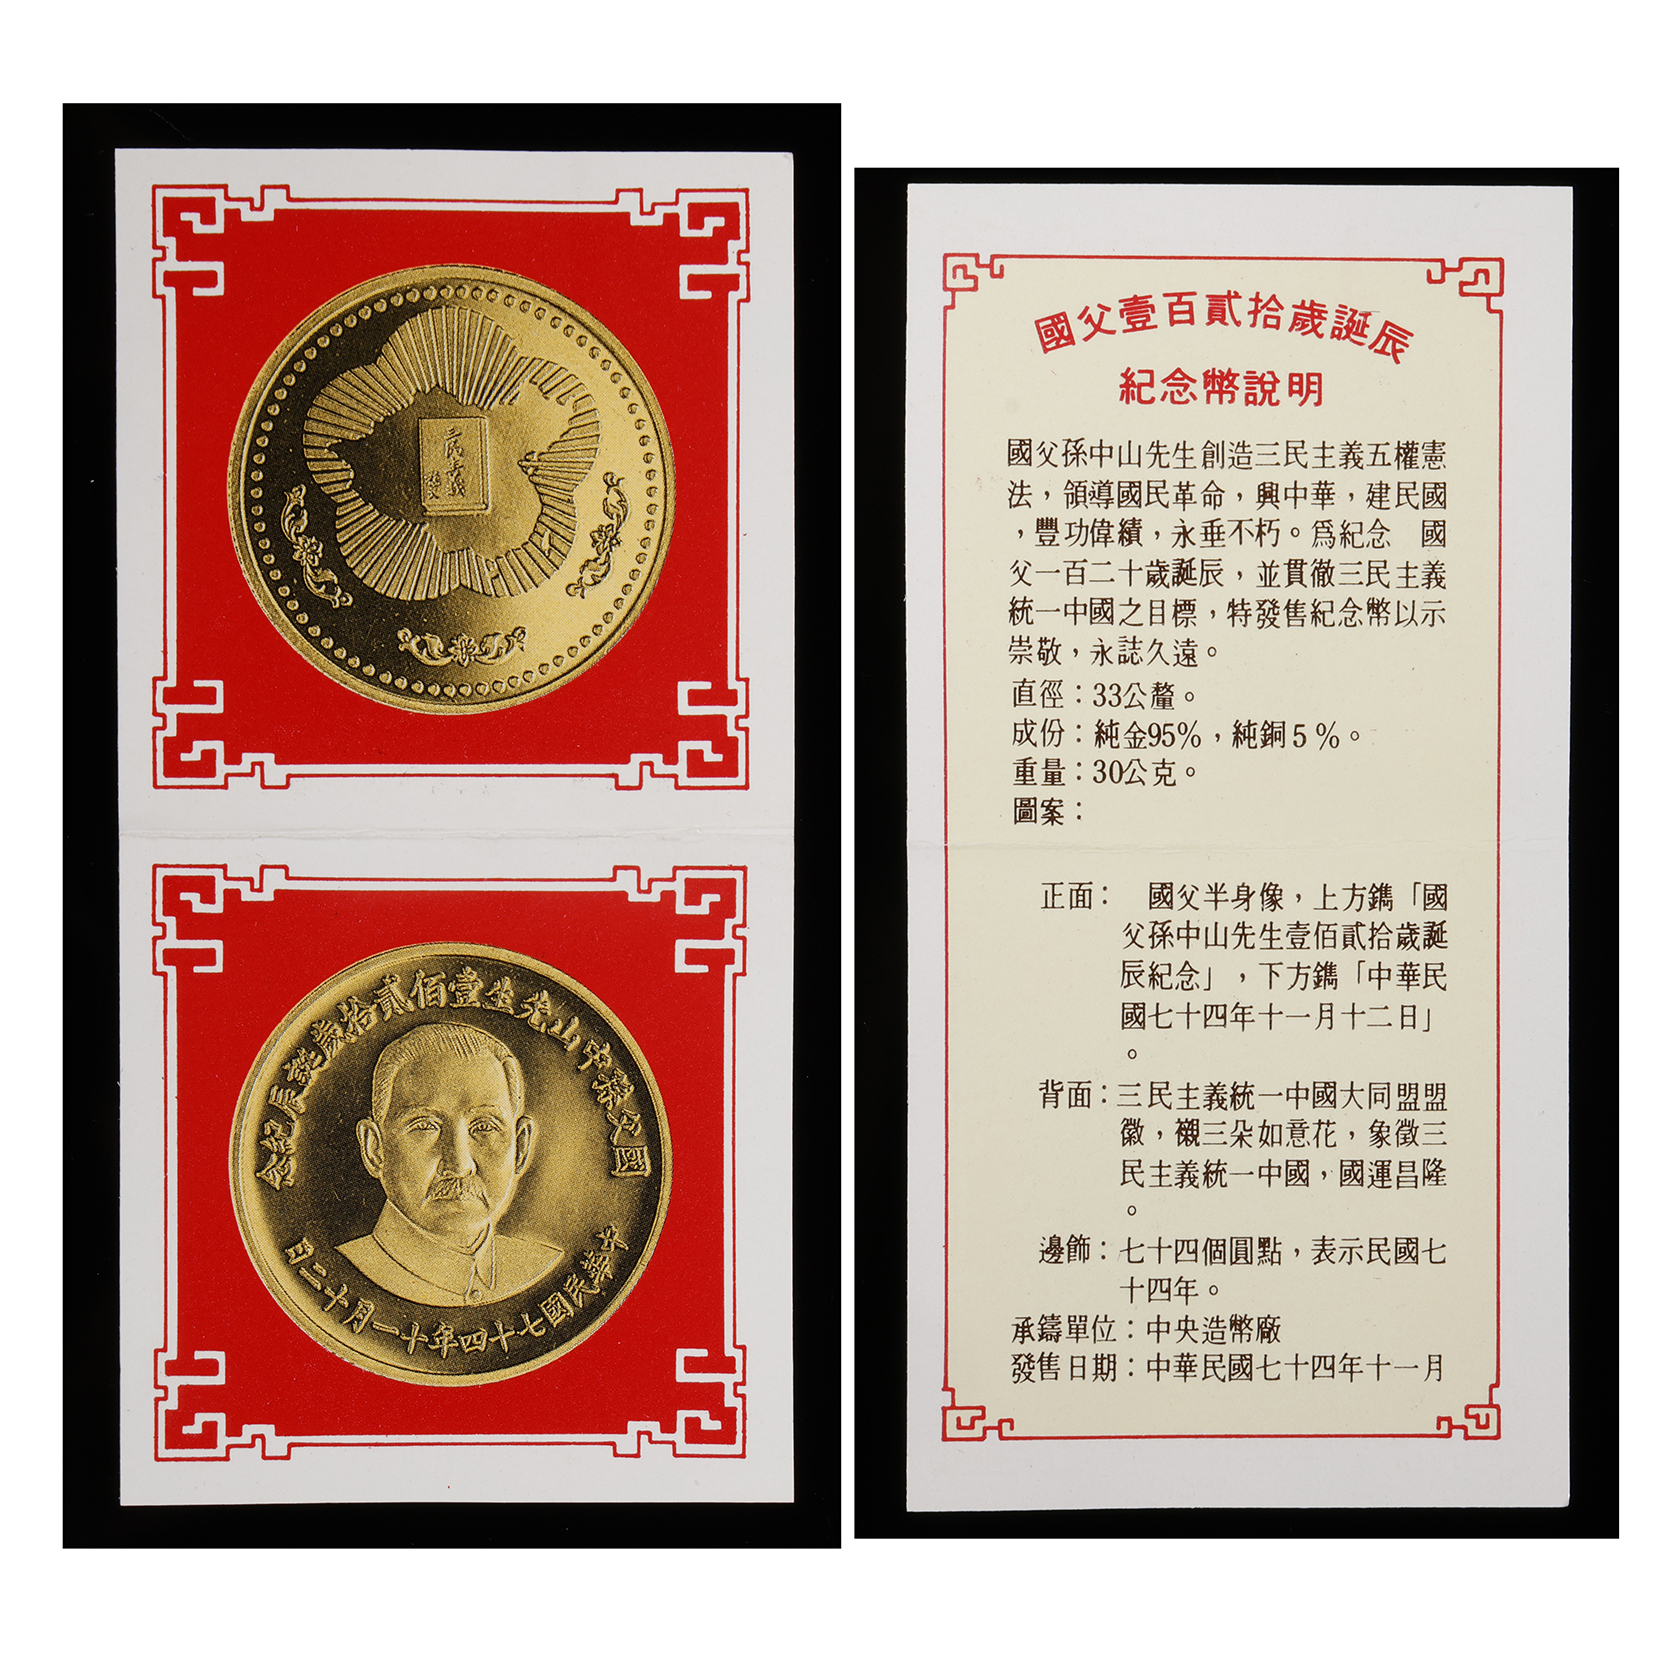 東方拍賣-1985年孫中山壹佰貳拾歲誕辰紀念金幣中央造幣廠發行1枚重30g 